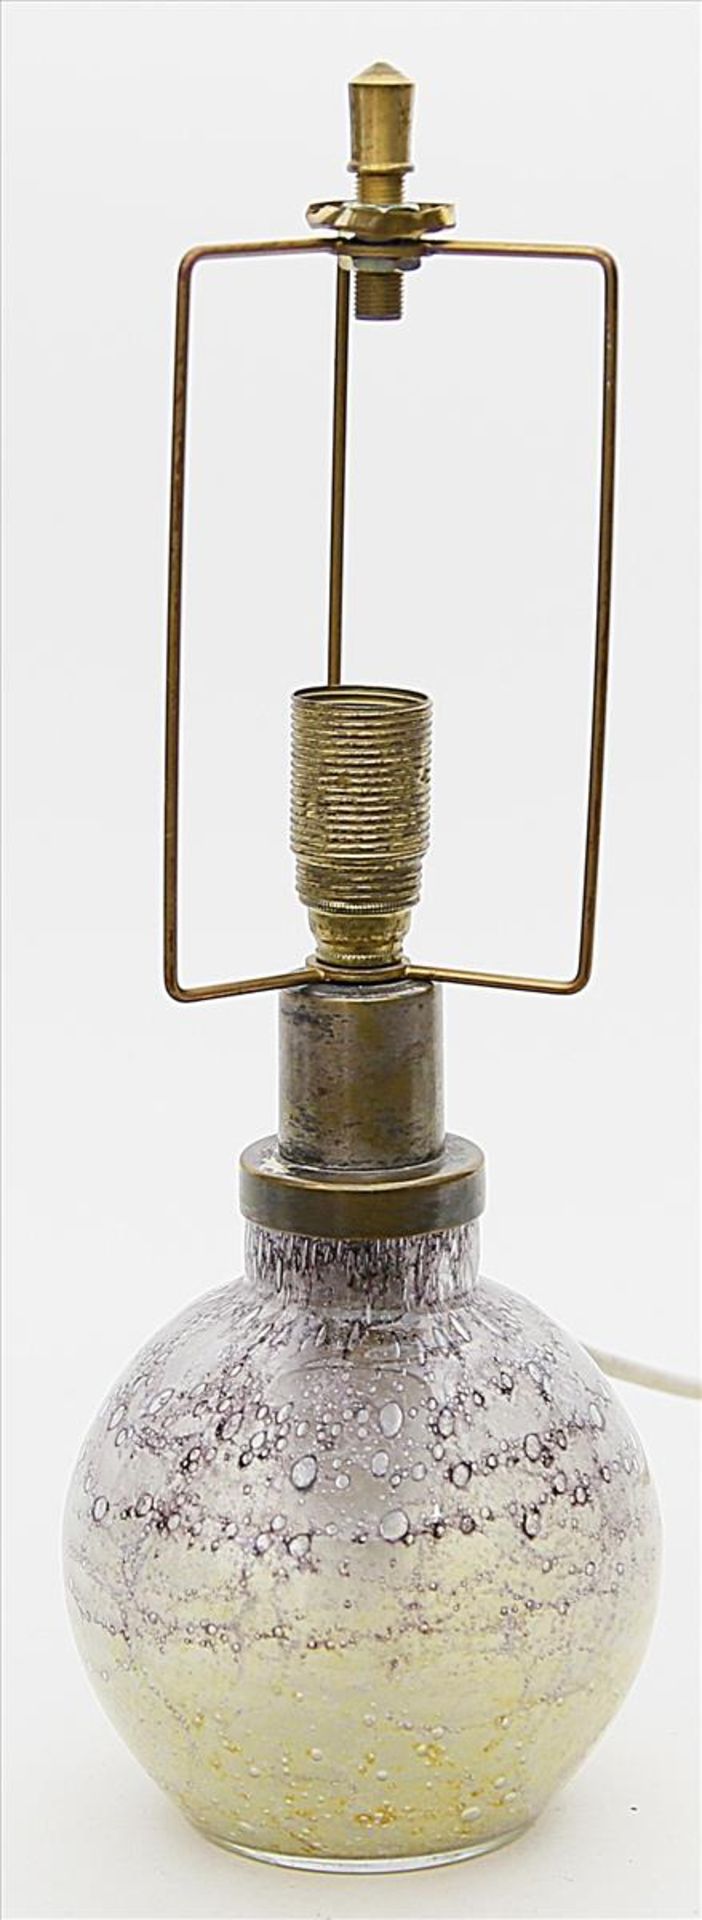 Tischlampe, WMF Ikora,ein- bzw. zweiflammig (innen). Farbloses Glas, zwischen den Schichten mit